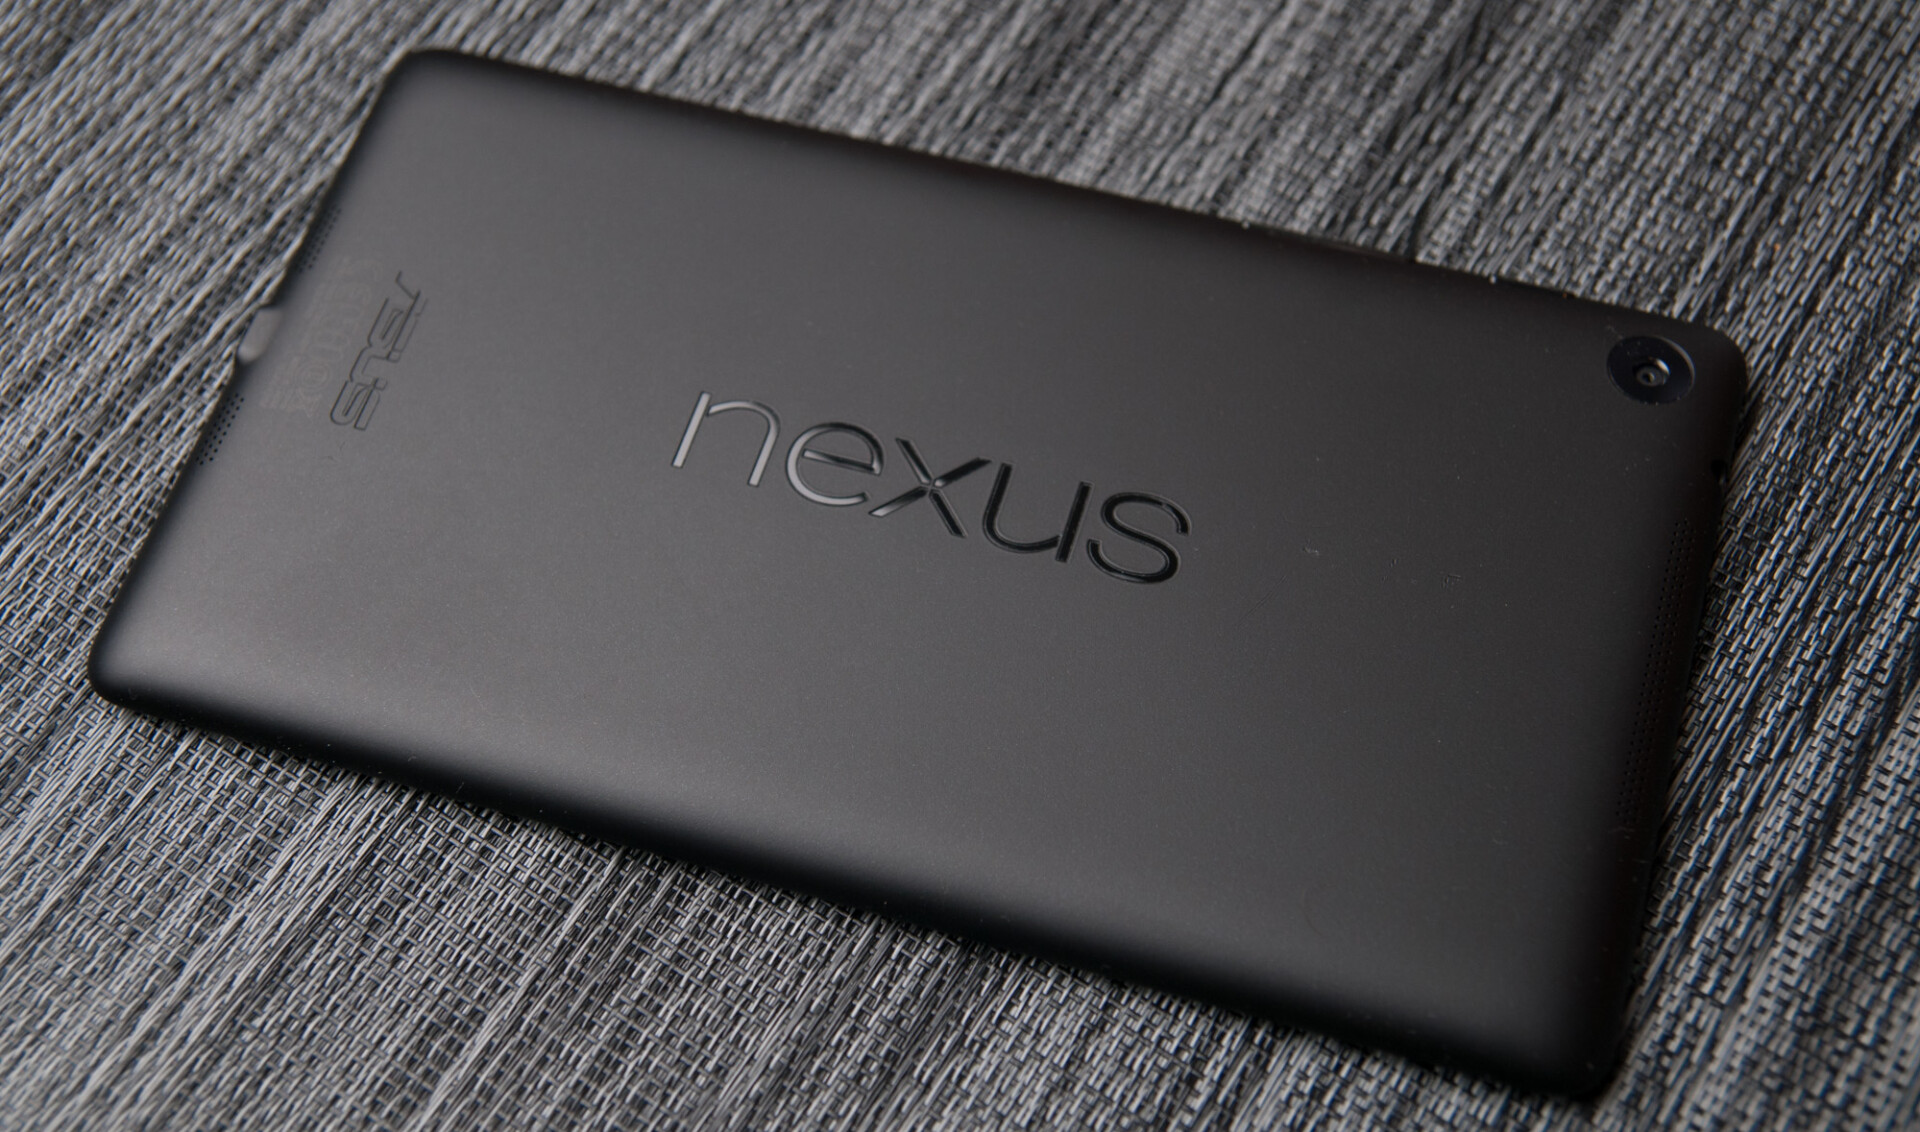 Google khai tử dòng Nexus và đổi tên thành Pixel và Pixel XL?